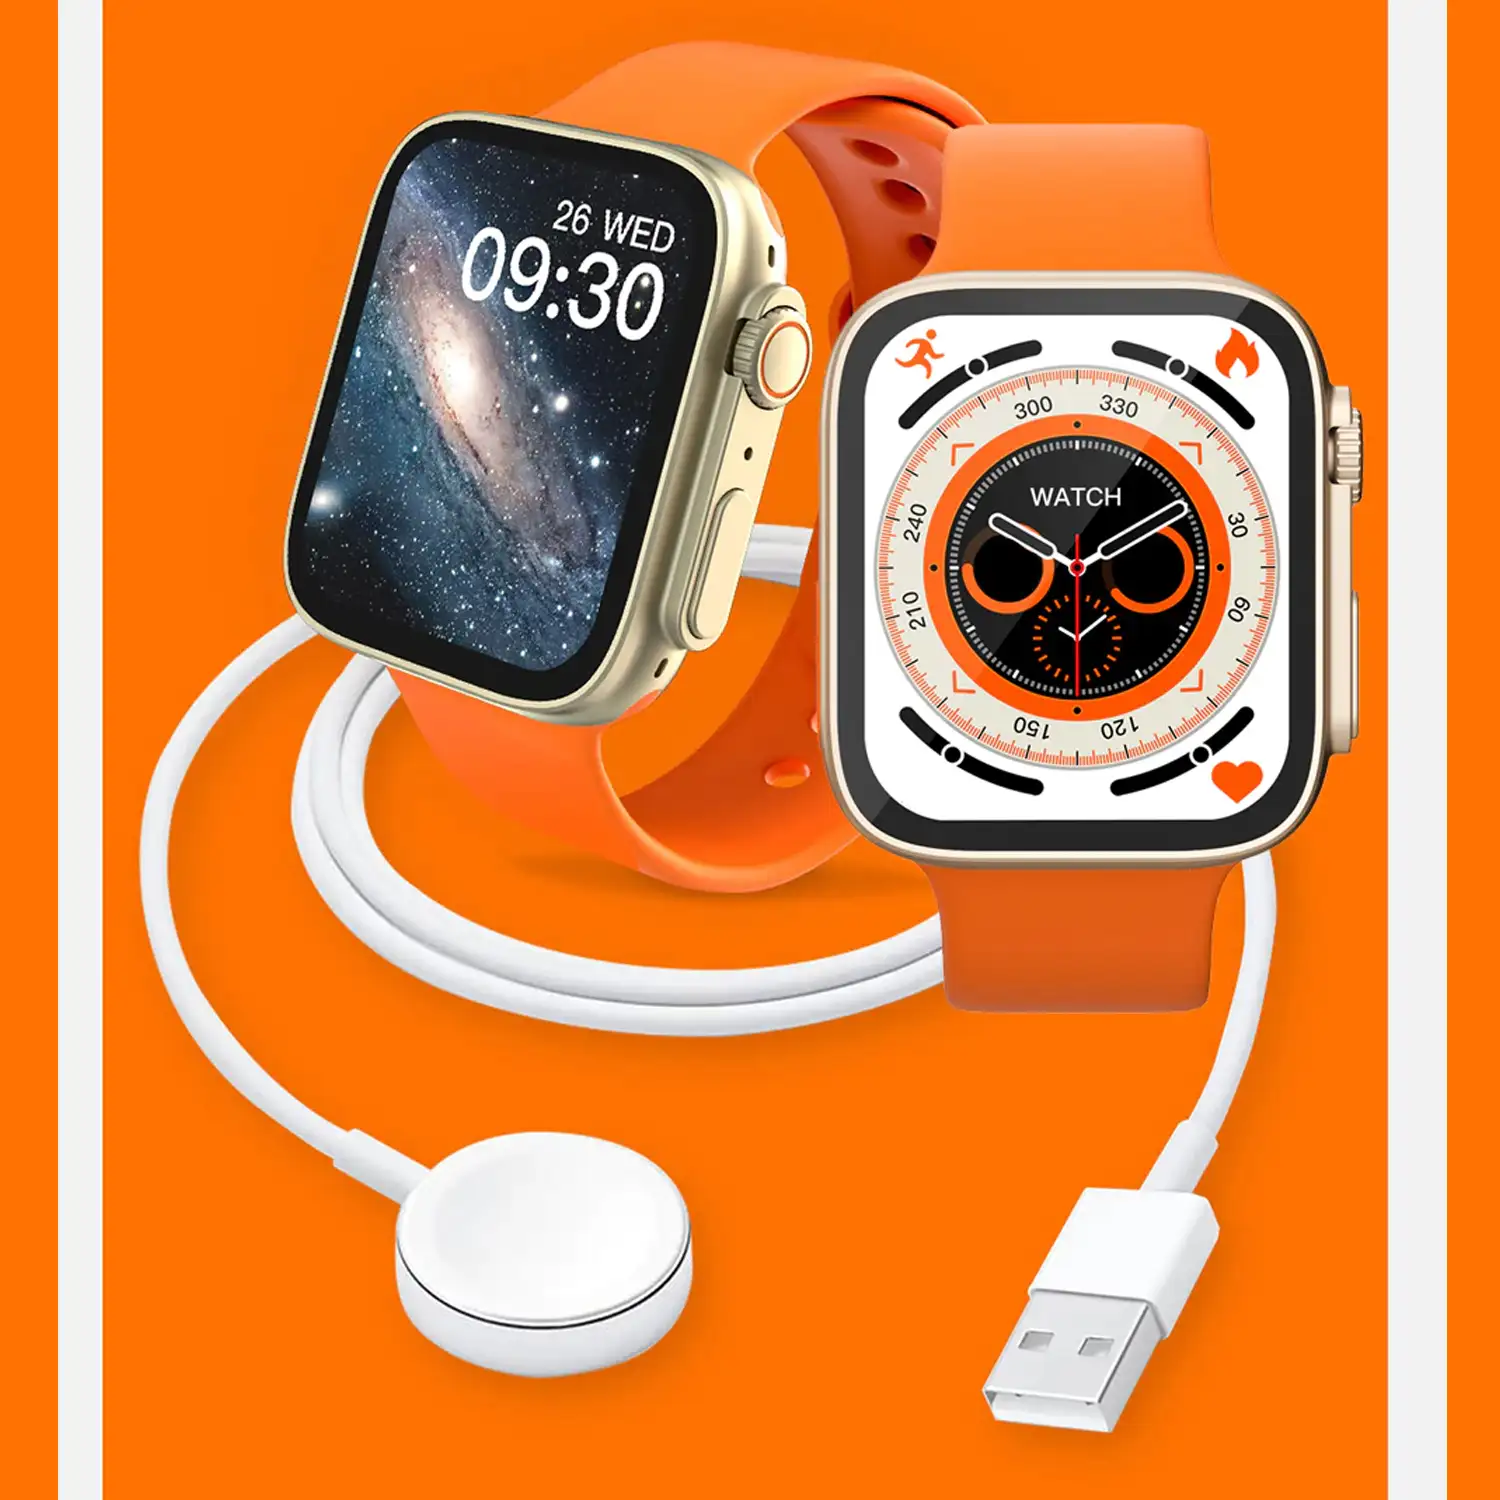 Smartwatch TRAIL S con monitor de oxígeno en sangre y tensión, notificaciones de Apps, pantalla de 1,83. Correa Sea band.